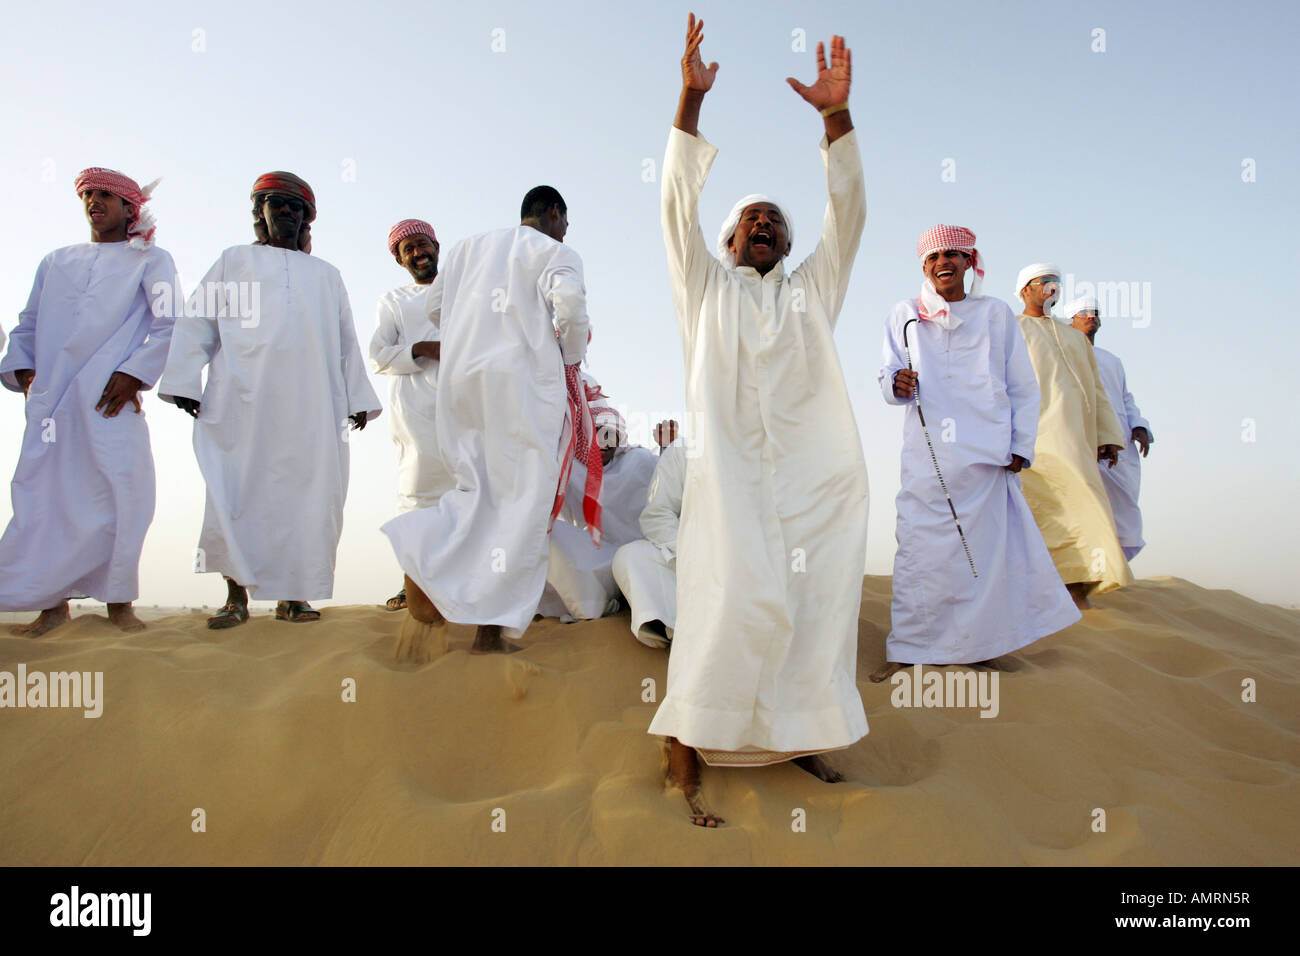 Group of Arab men in the desert Stock Photo